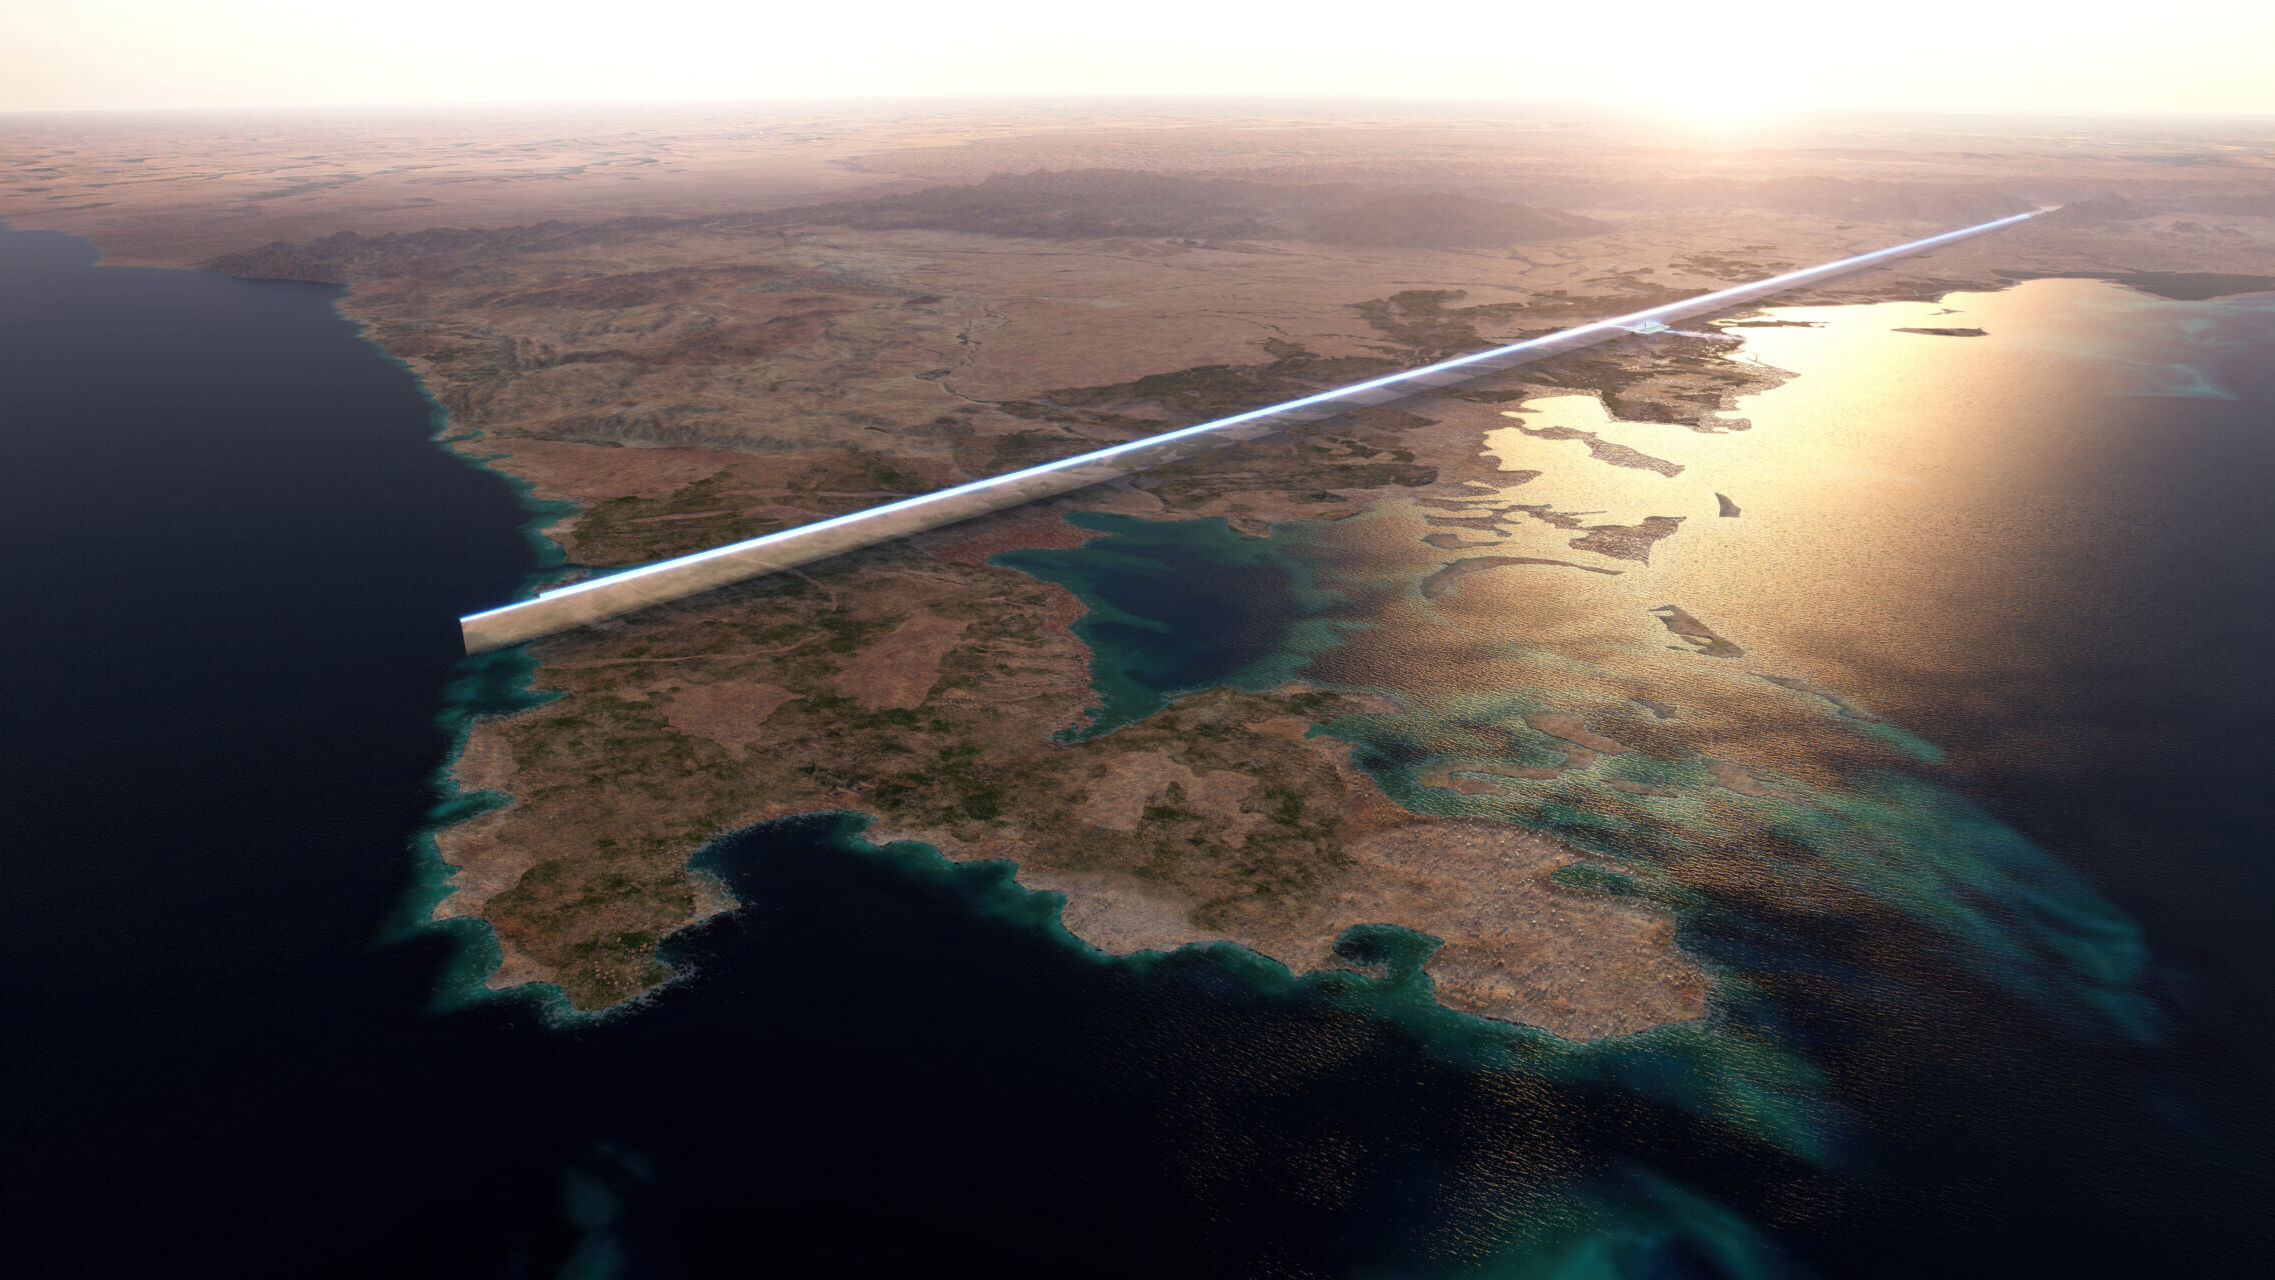 170 km lång kommer "The Line" i Saudiarabien att bli den första linjära staden i världen